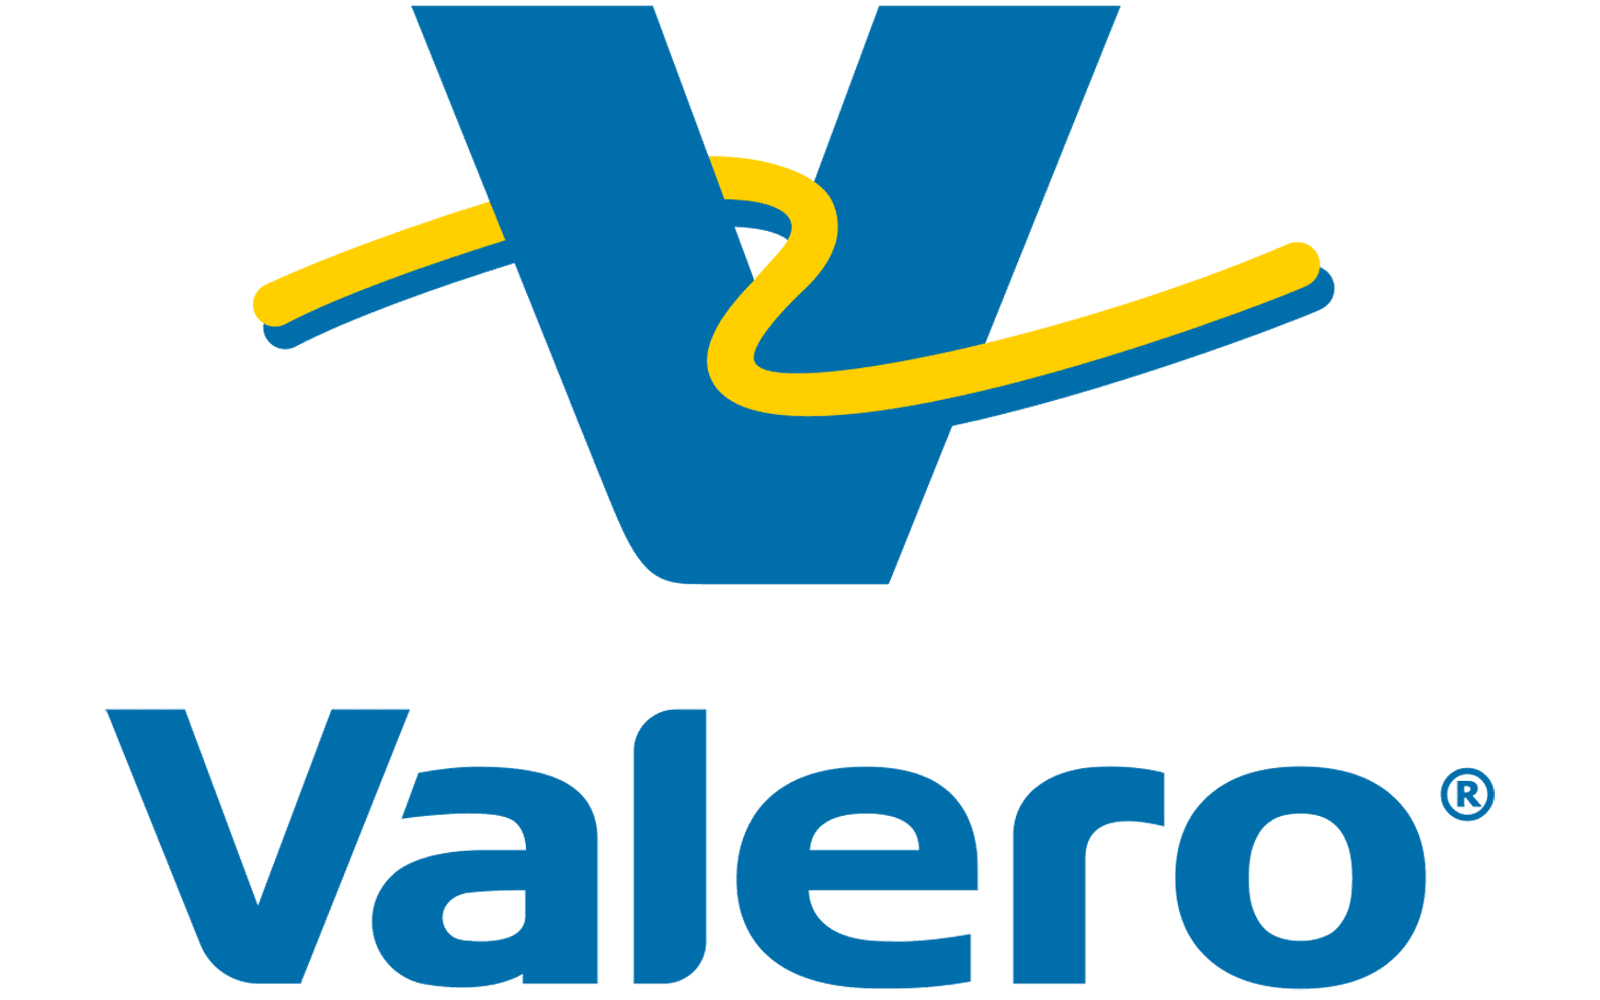 Valero Energy